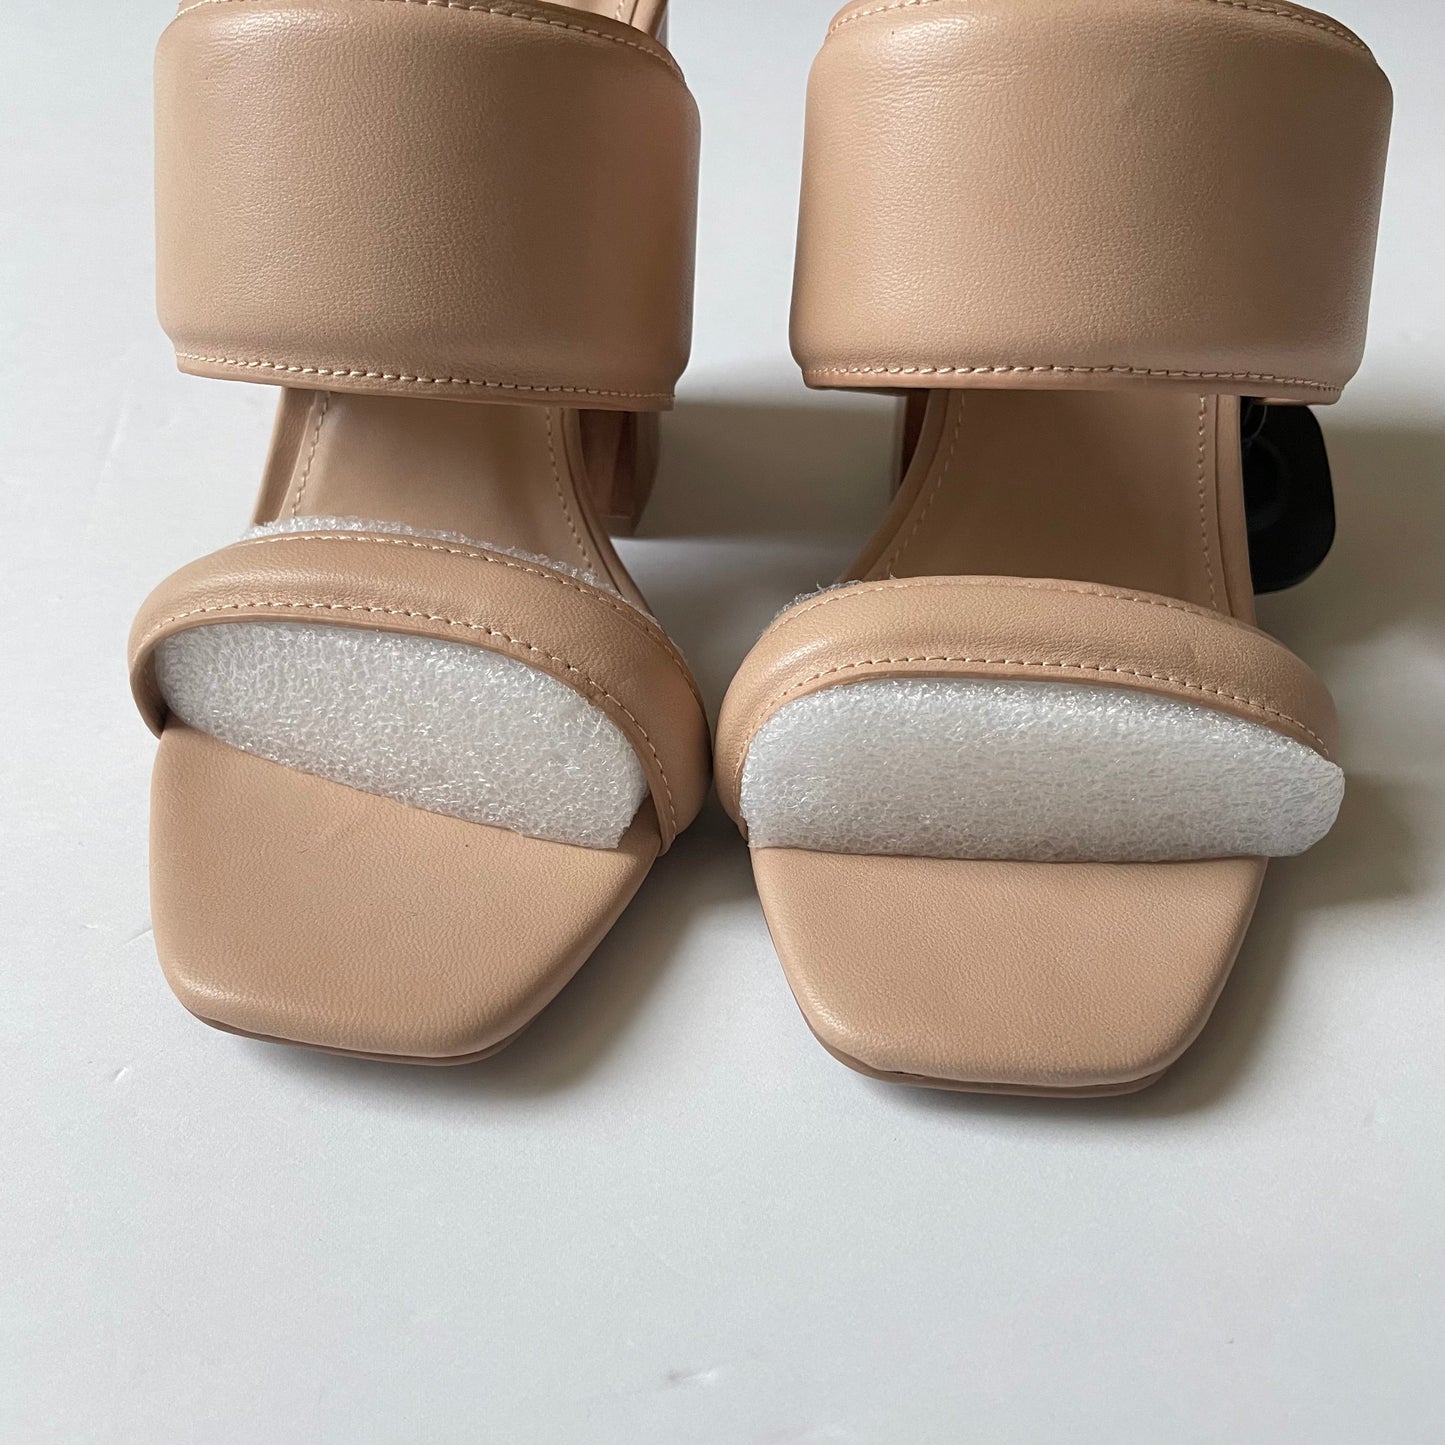 Tan Shoes Heels Block Qupid, Size 7